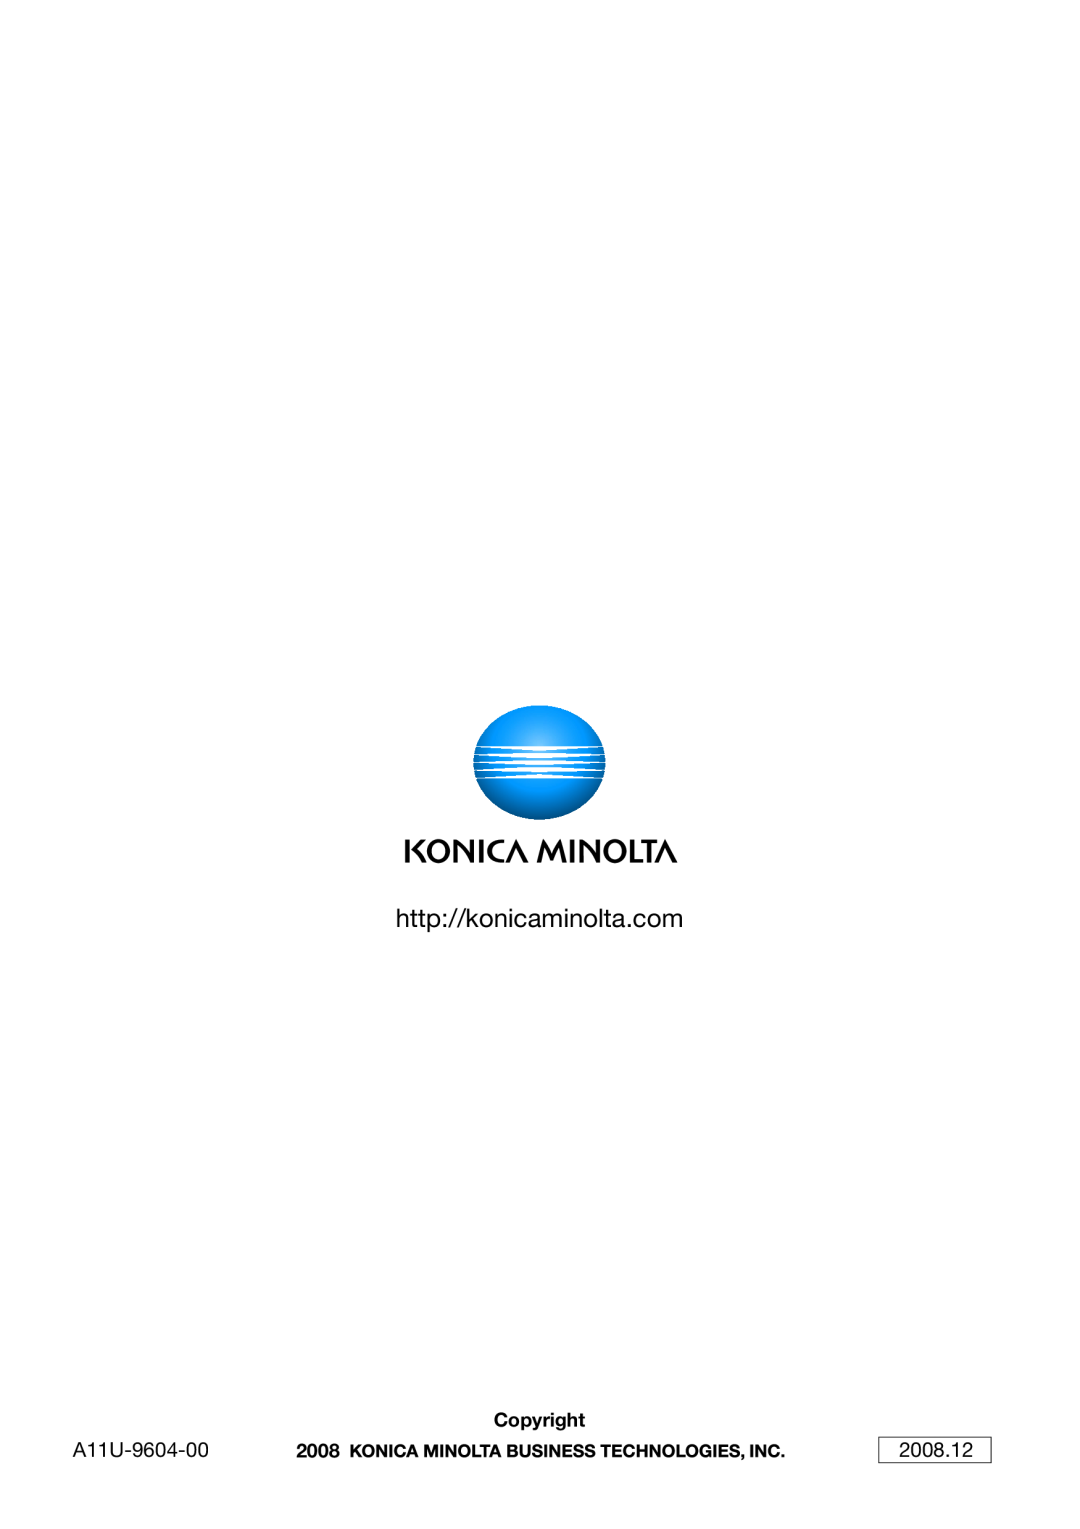 Konica Minolta 222, 282, 362 manual A11U-9604-00, 2008.12, Copyright 